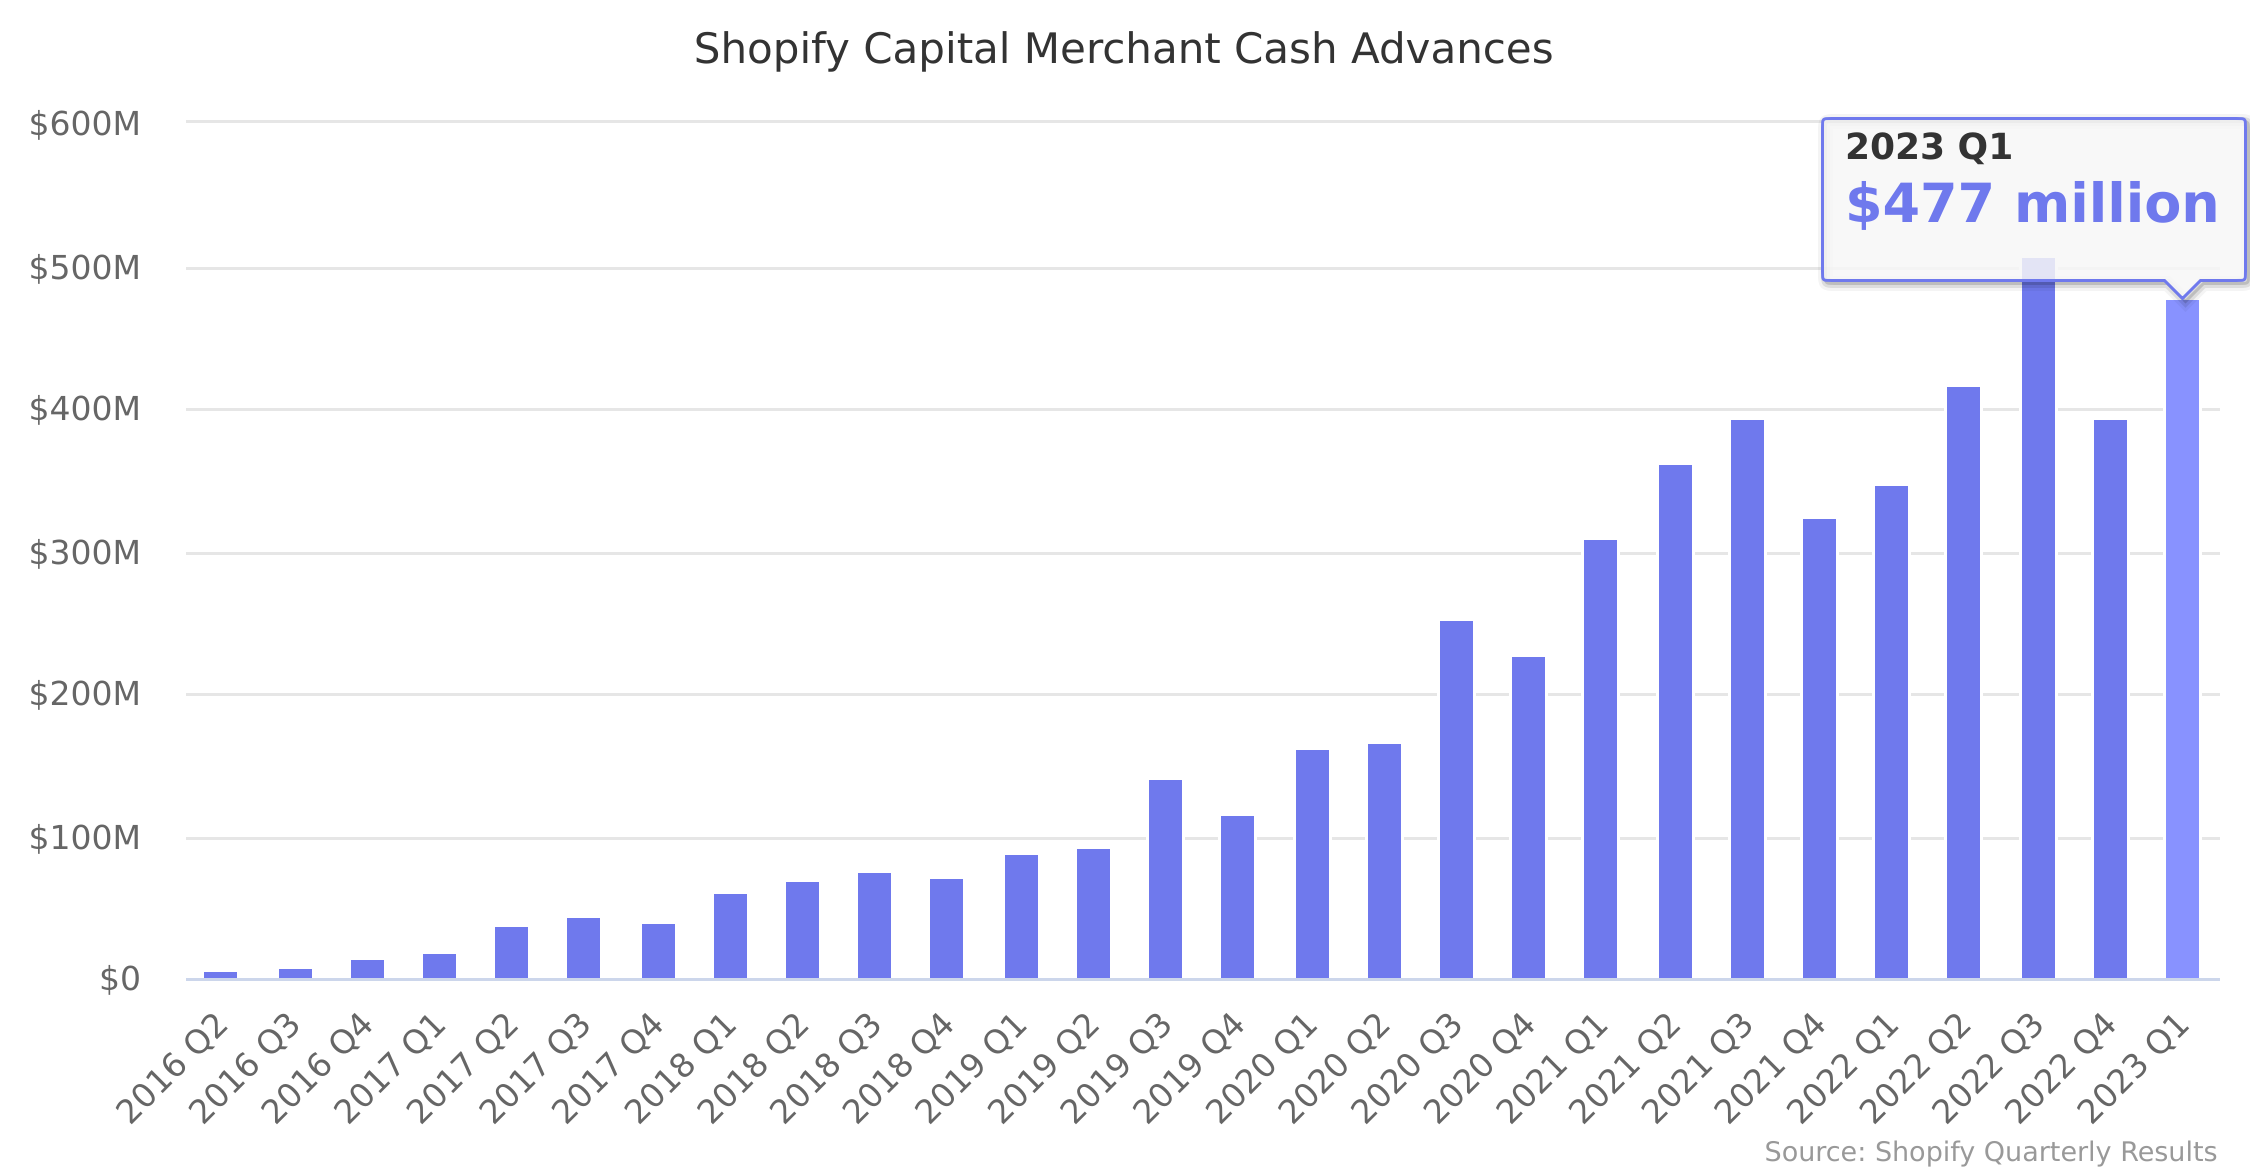 Shopify Capital Merchant Cash Advances 2016-2023